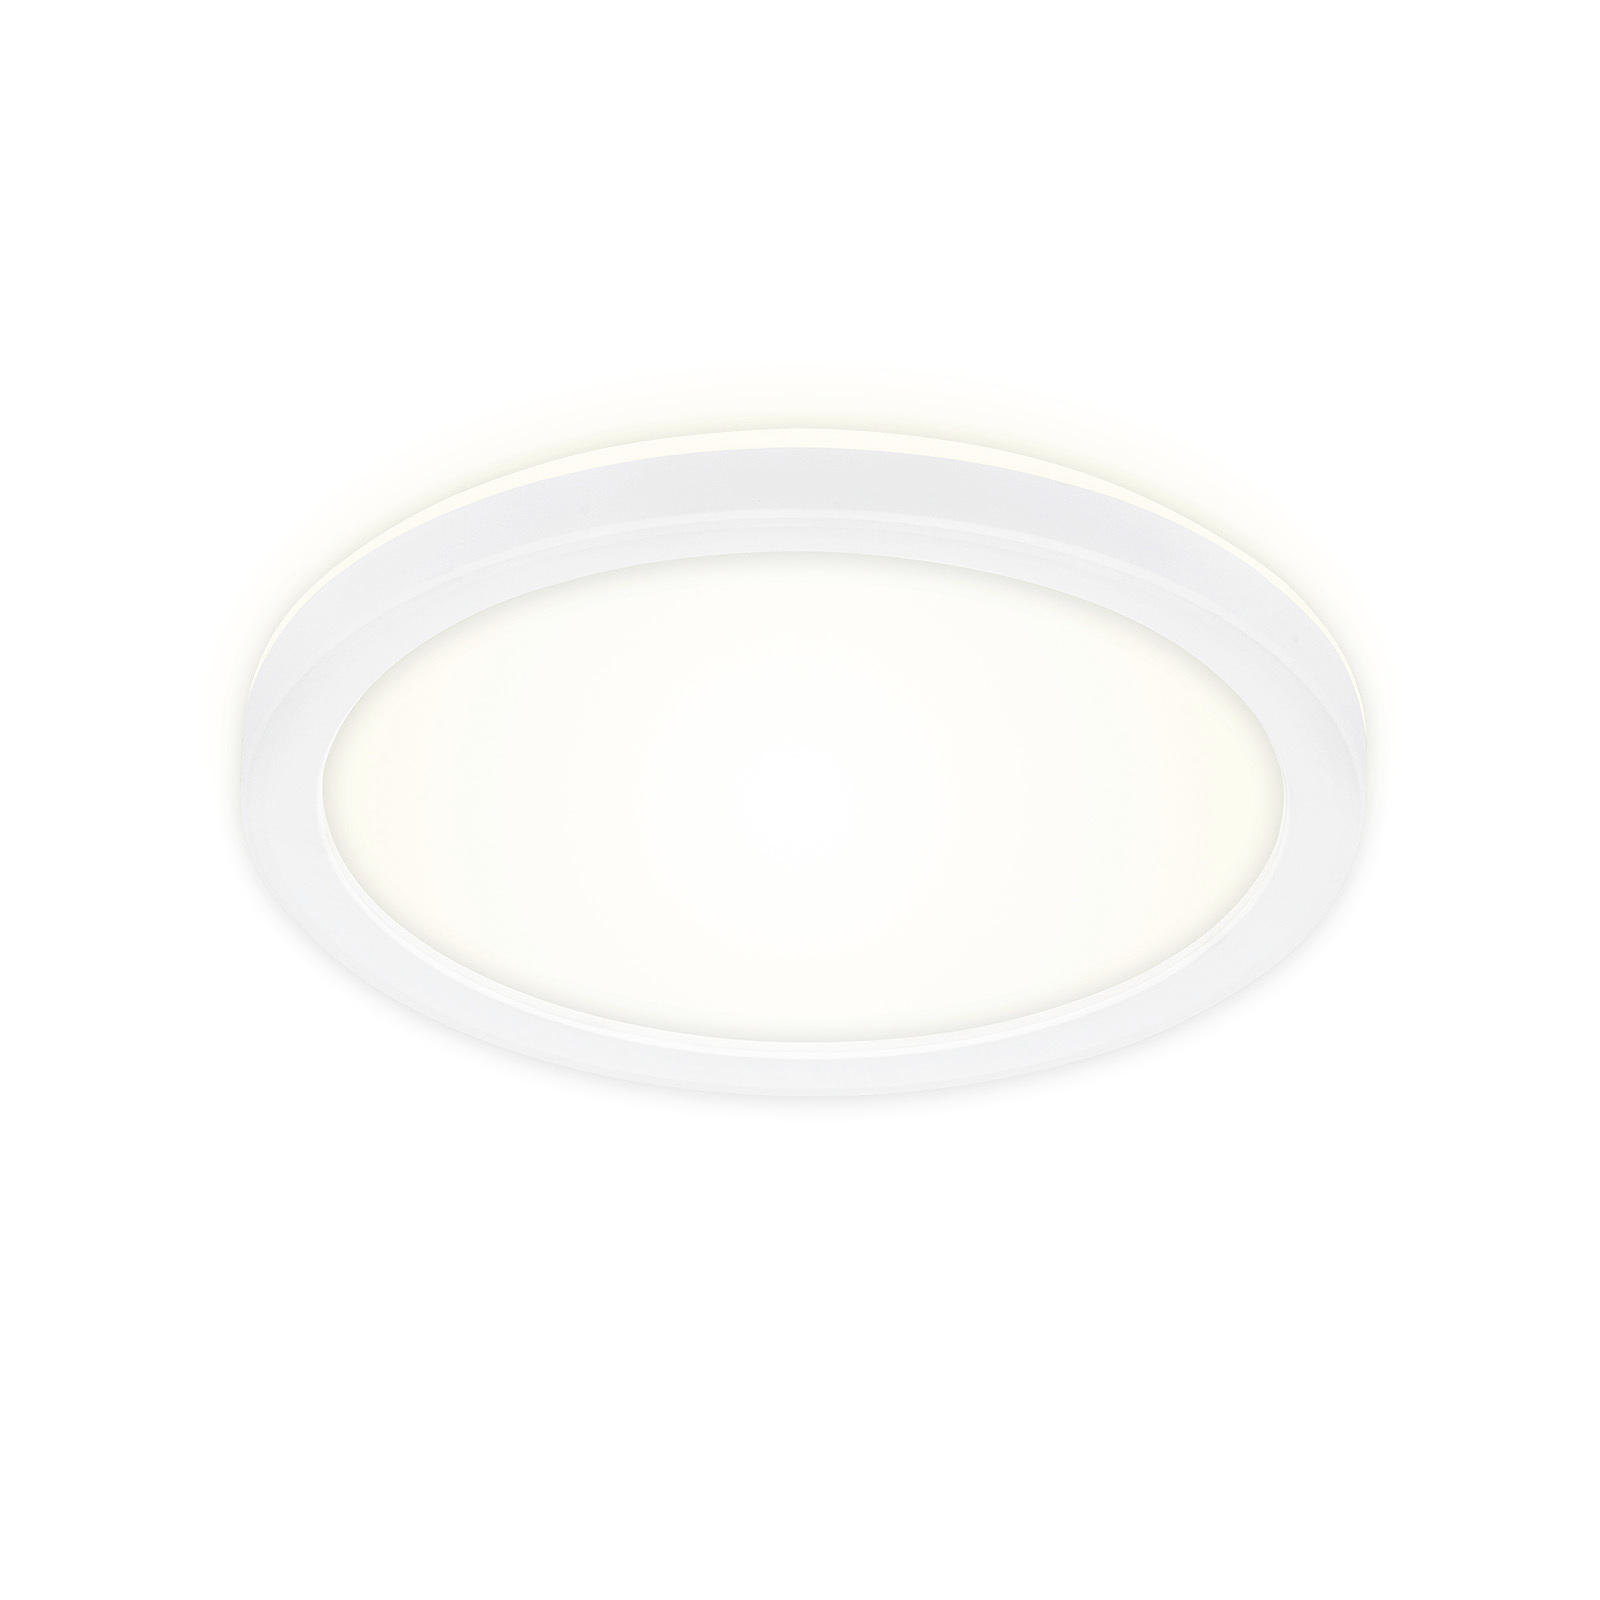 LED-PANEEL Slim  - Weiß, Basics, Kunststoff (19/2,8cm)